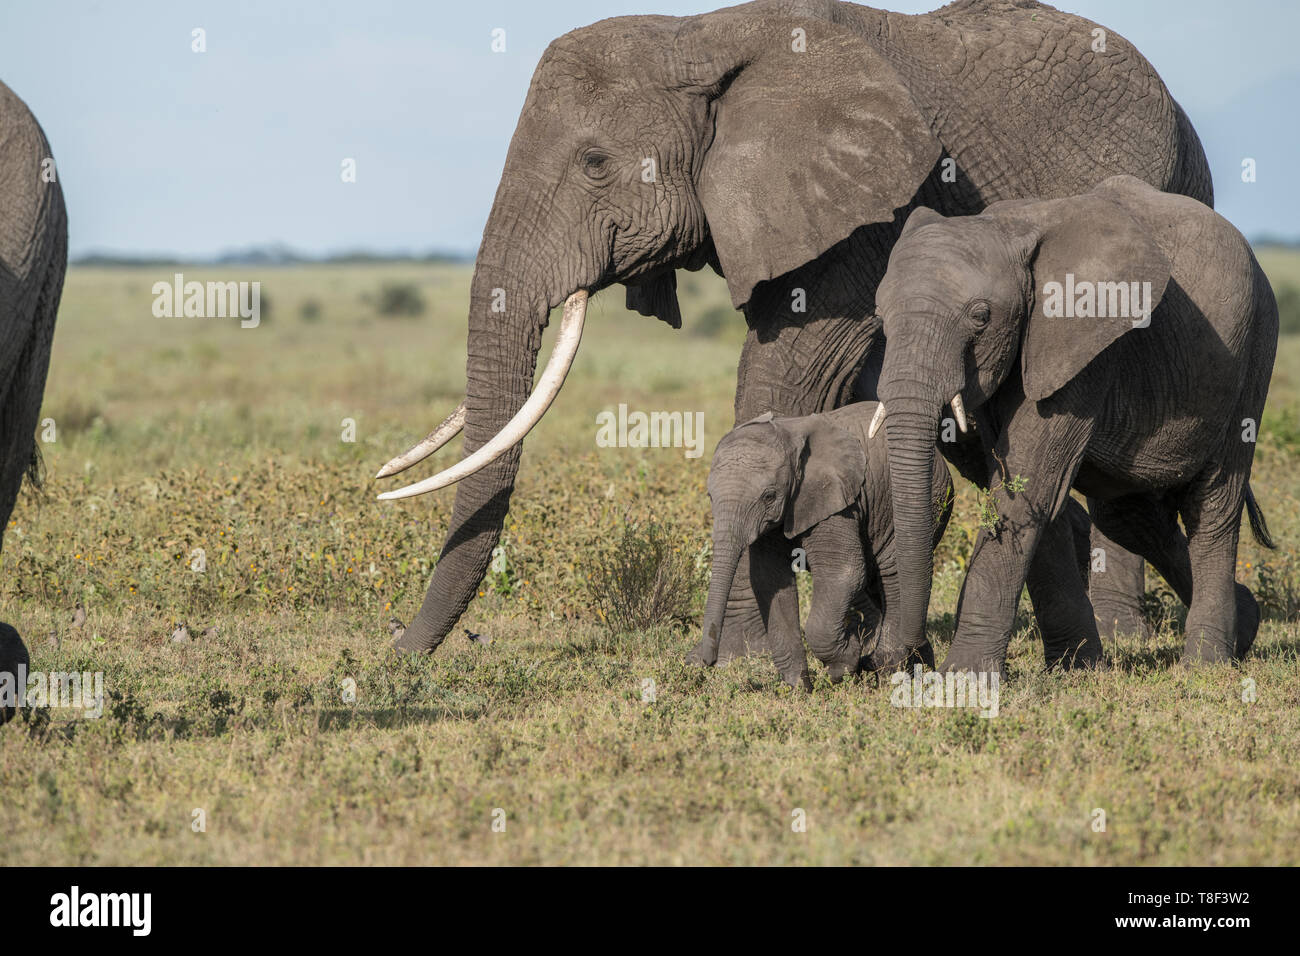 Bébé éléphant balade avec des adultes, Tanzanie Banque D'Images